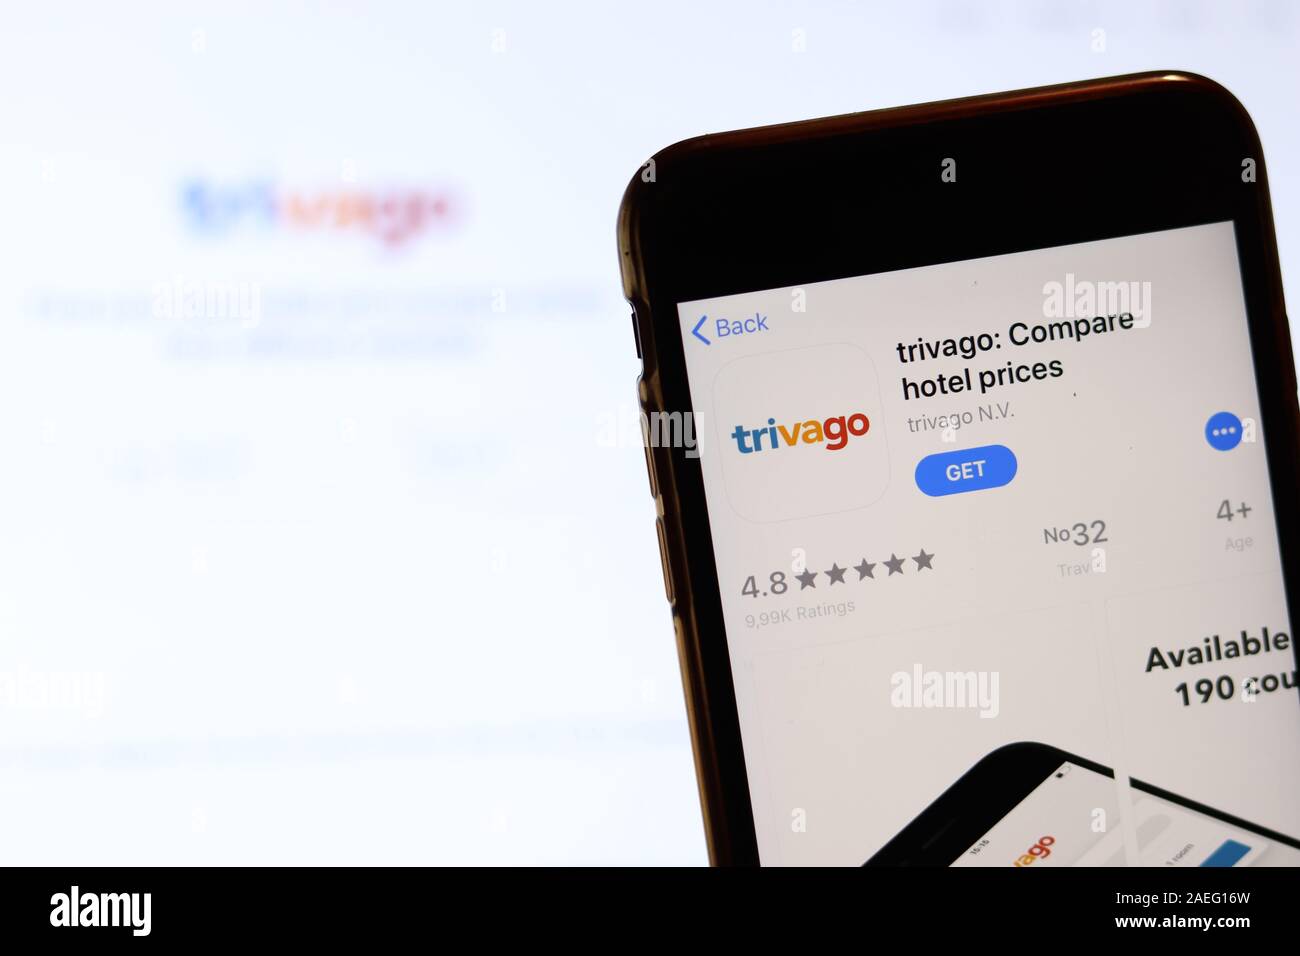 Los Angeles, Californie, USA - 26 novembre 2019 : Trivago icône sur l'écran du téléphone avec le logo sur l'arrière-plan flou, éditorial d'illustration. Banque D'Images